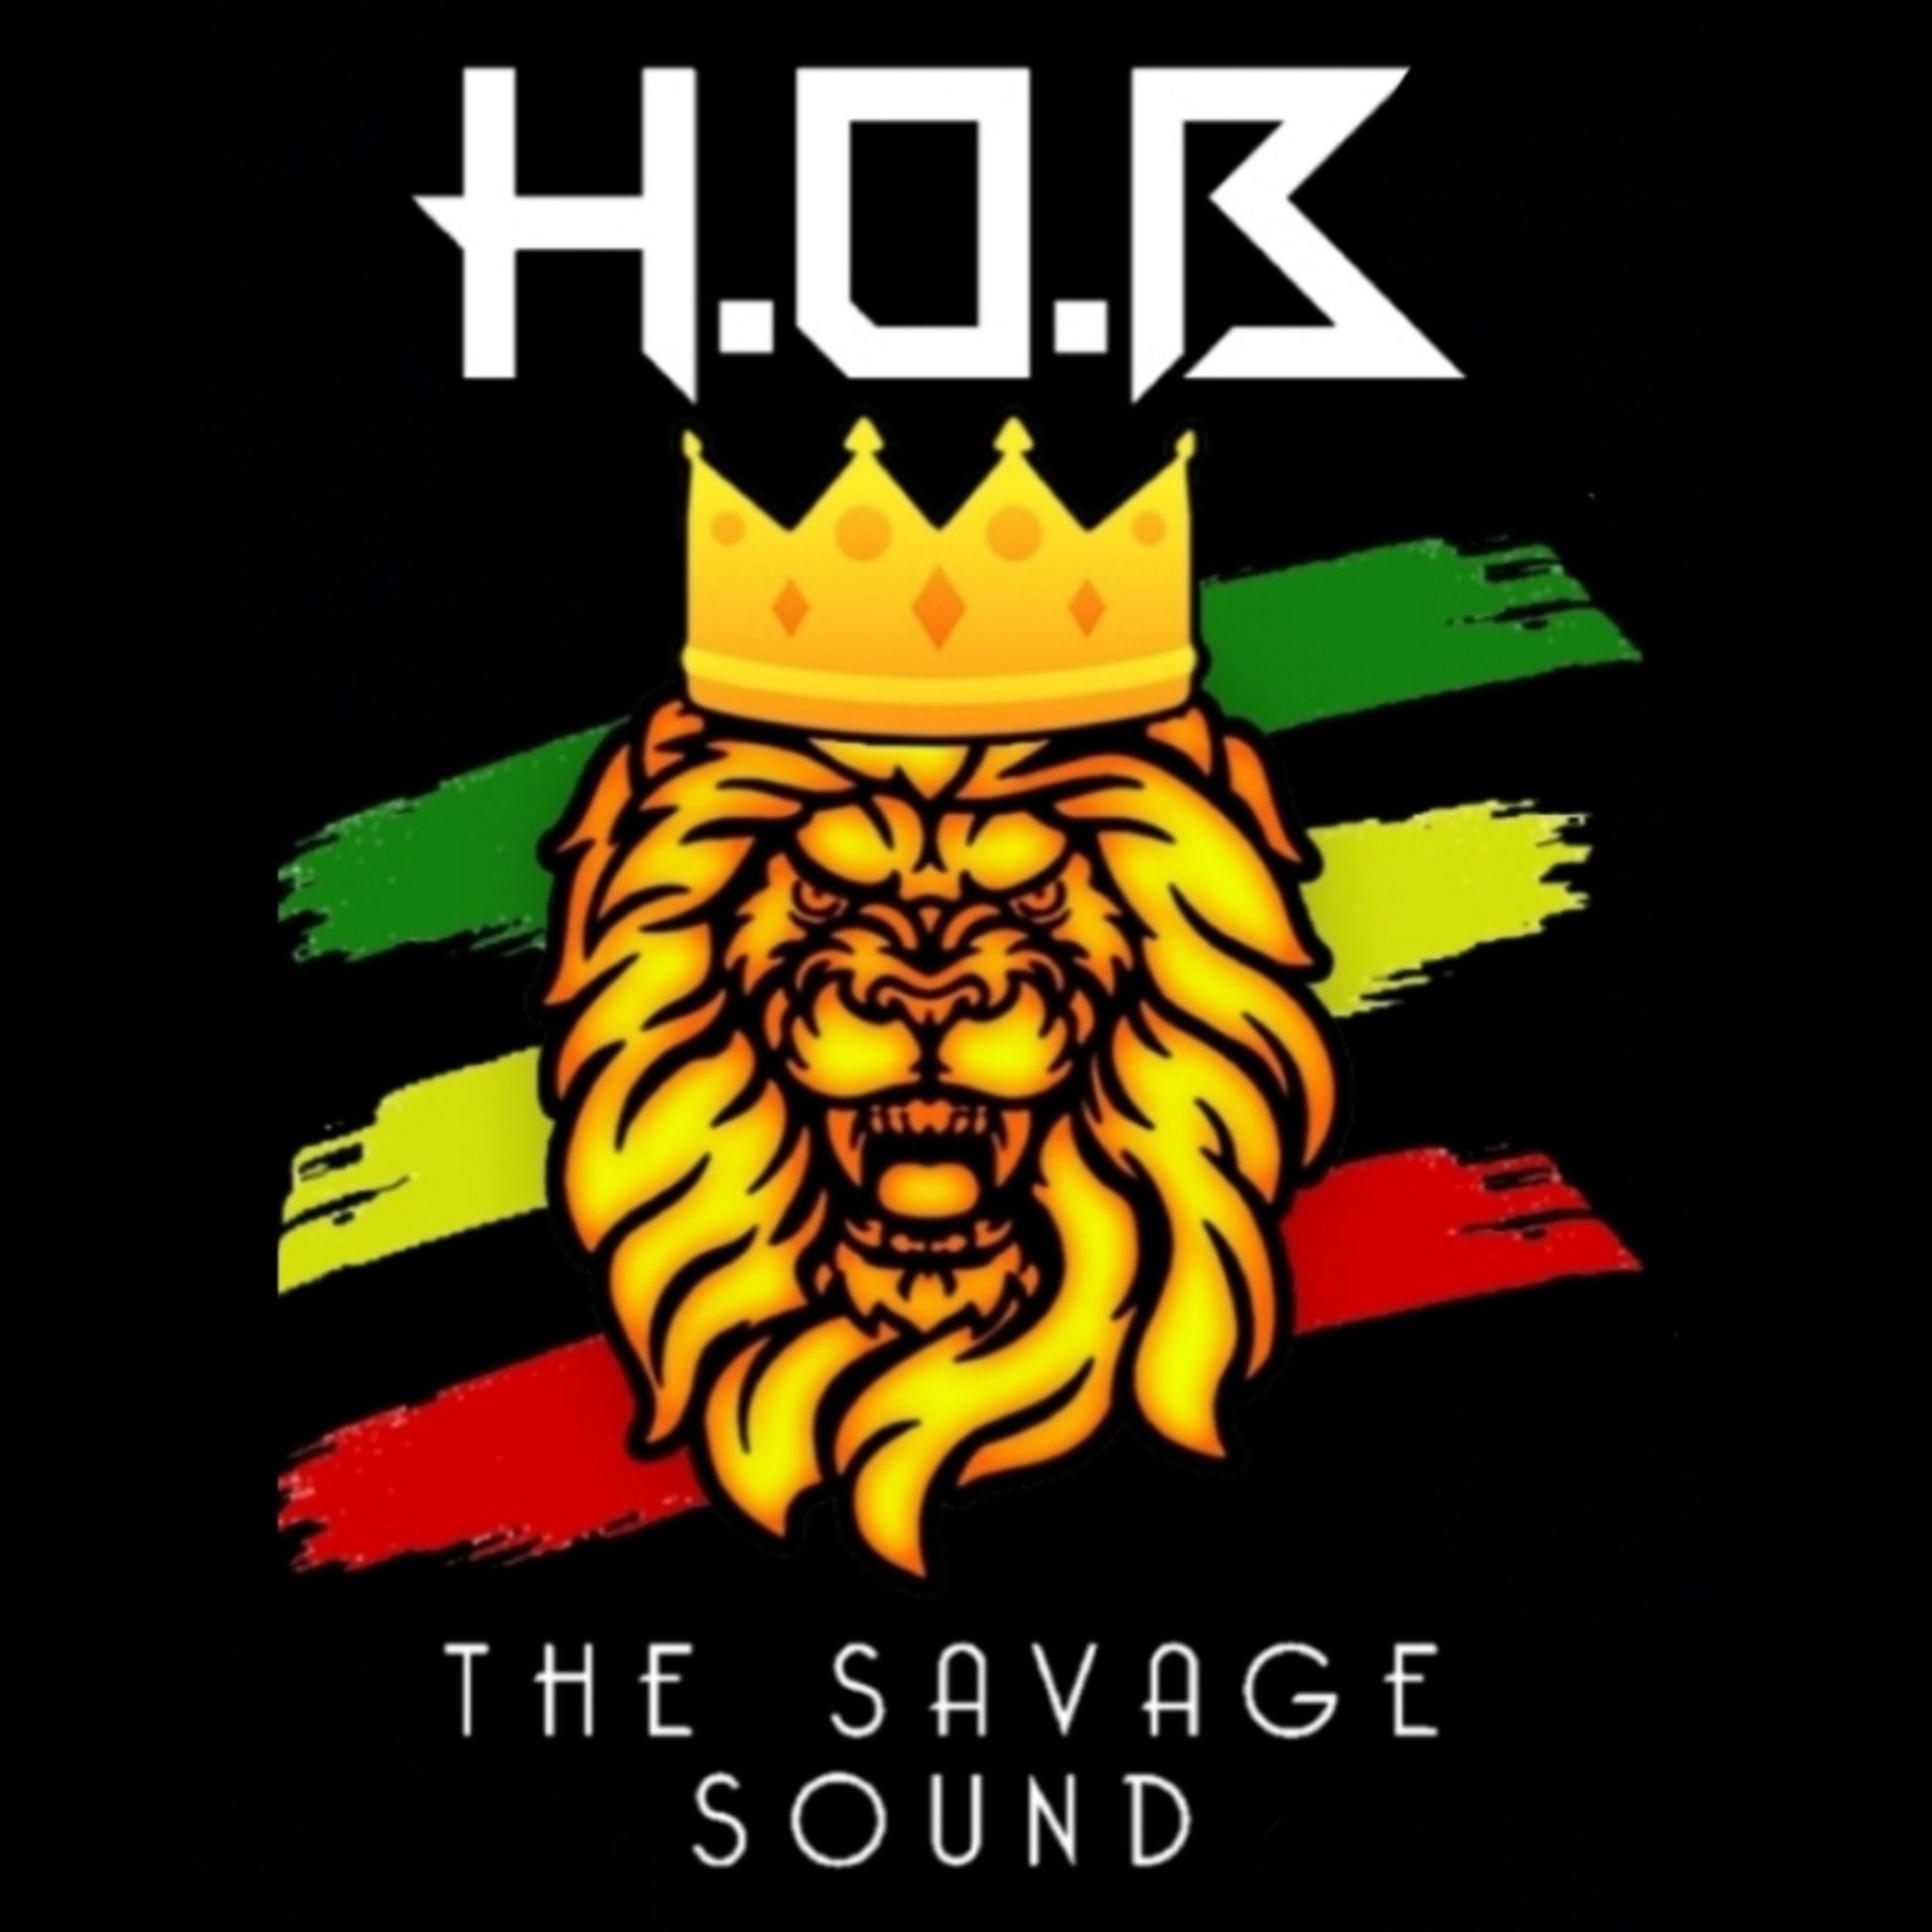 Art for H.O.B SOUND MIX 9 by H.O.B THE SAVAGE SOUND